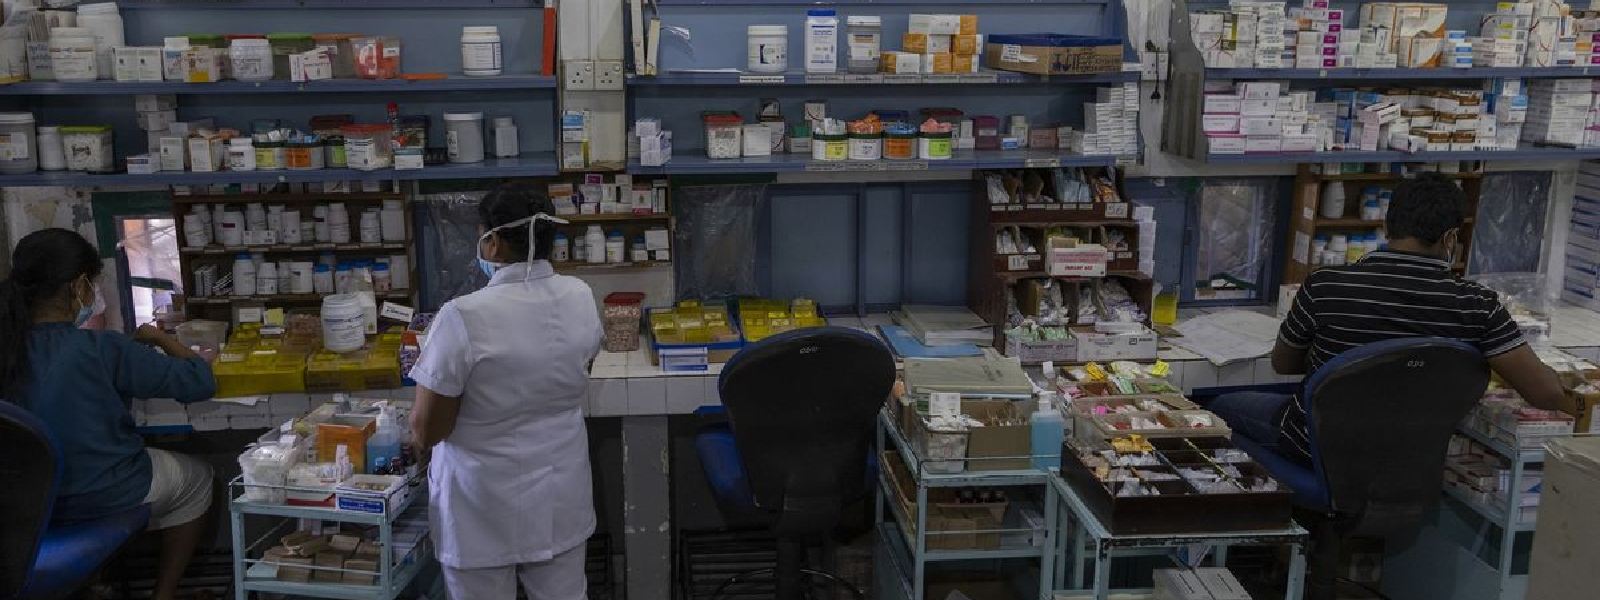 110 medicines in short supply